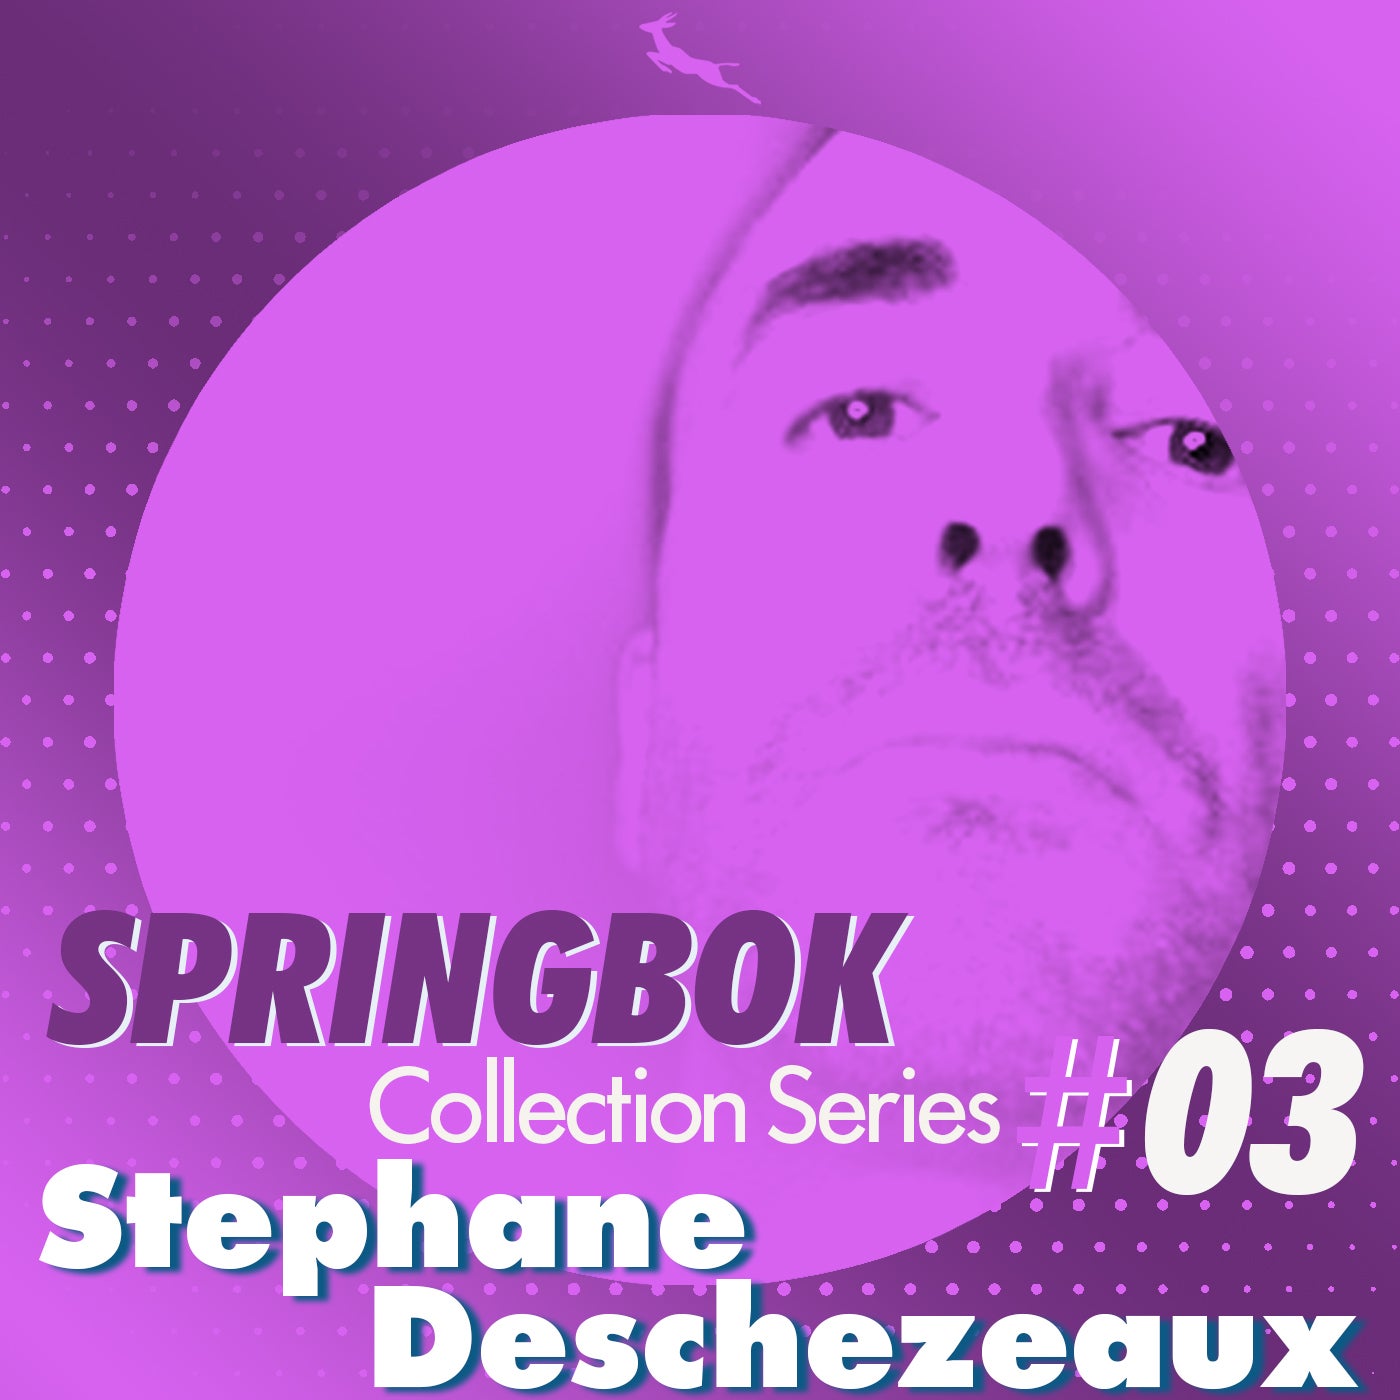 Springbok Collection series #3